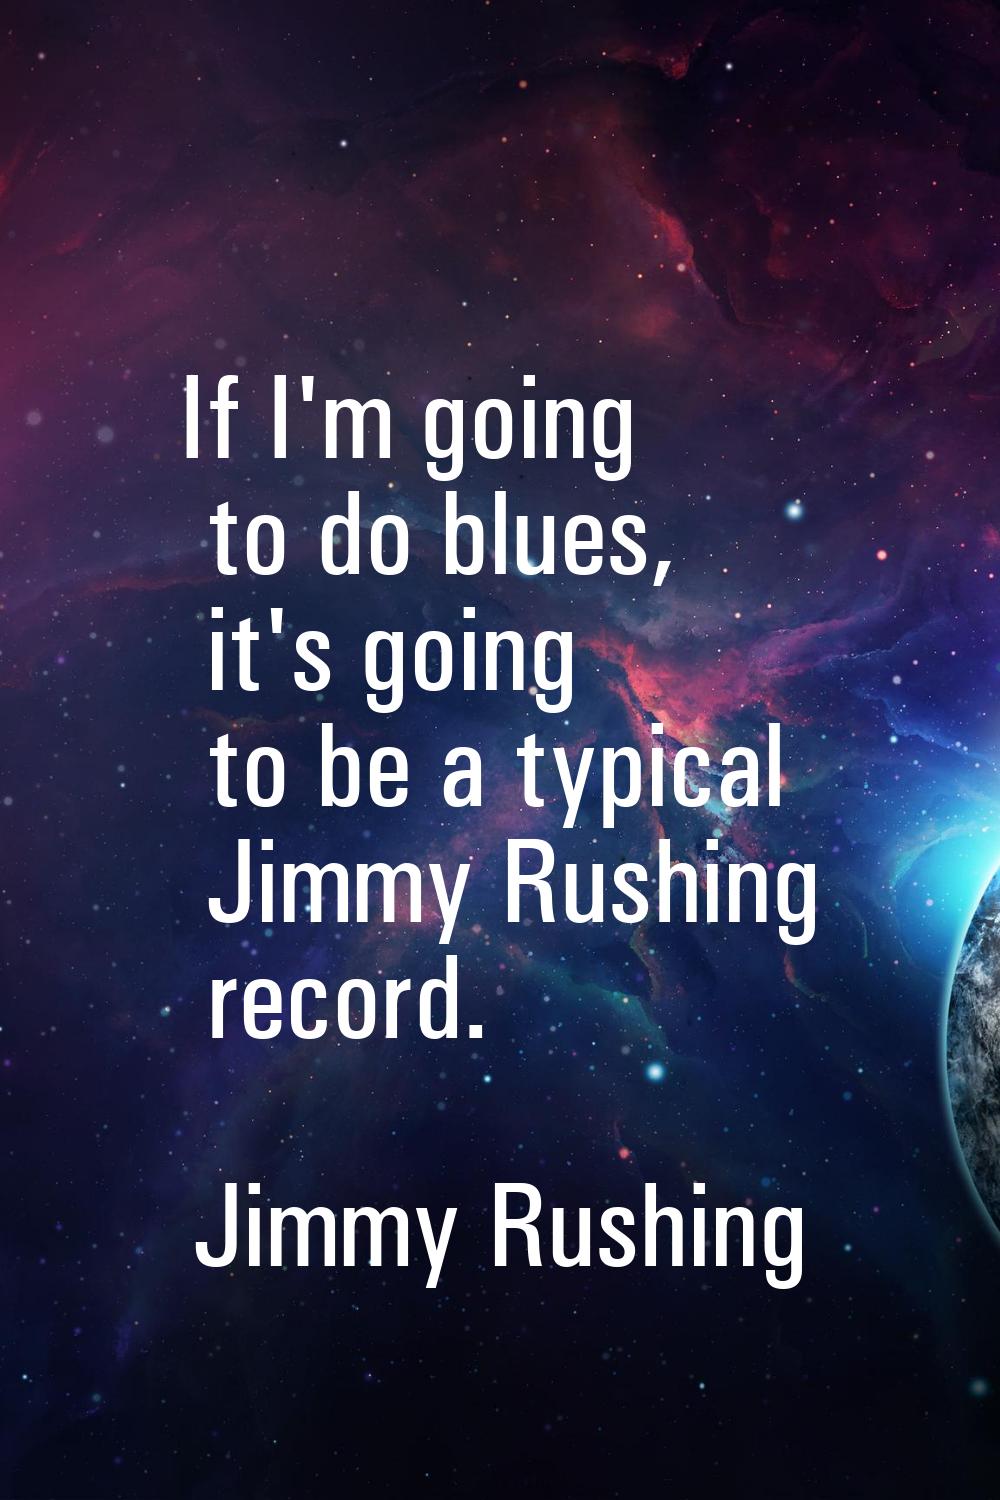 If I'm going to do blues, it's going to be a typical Jimmy Rushing record.